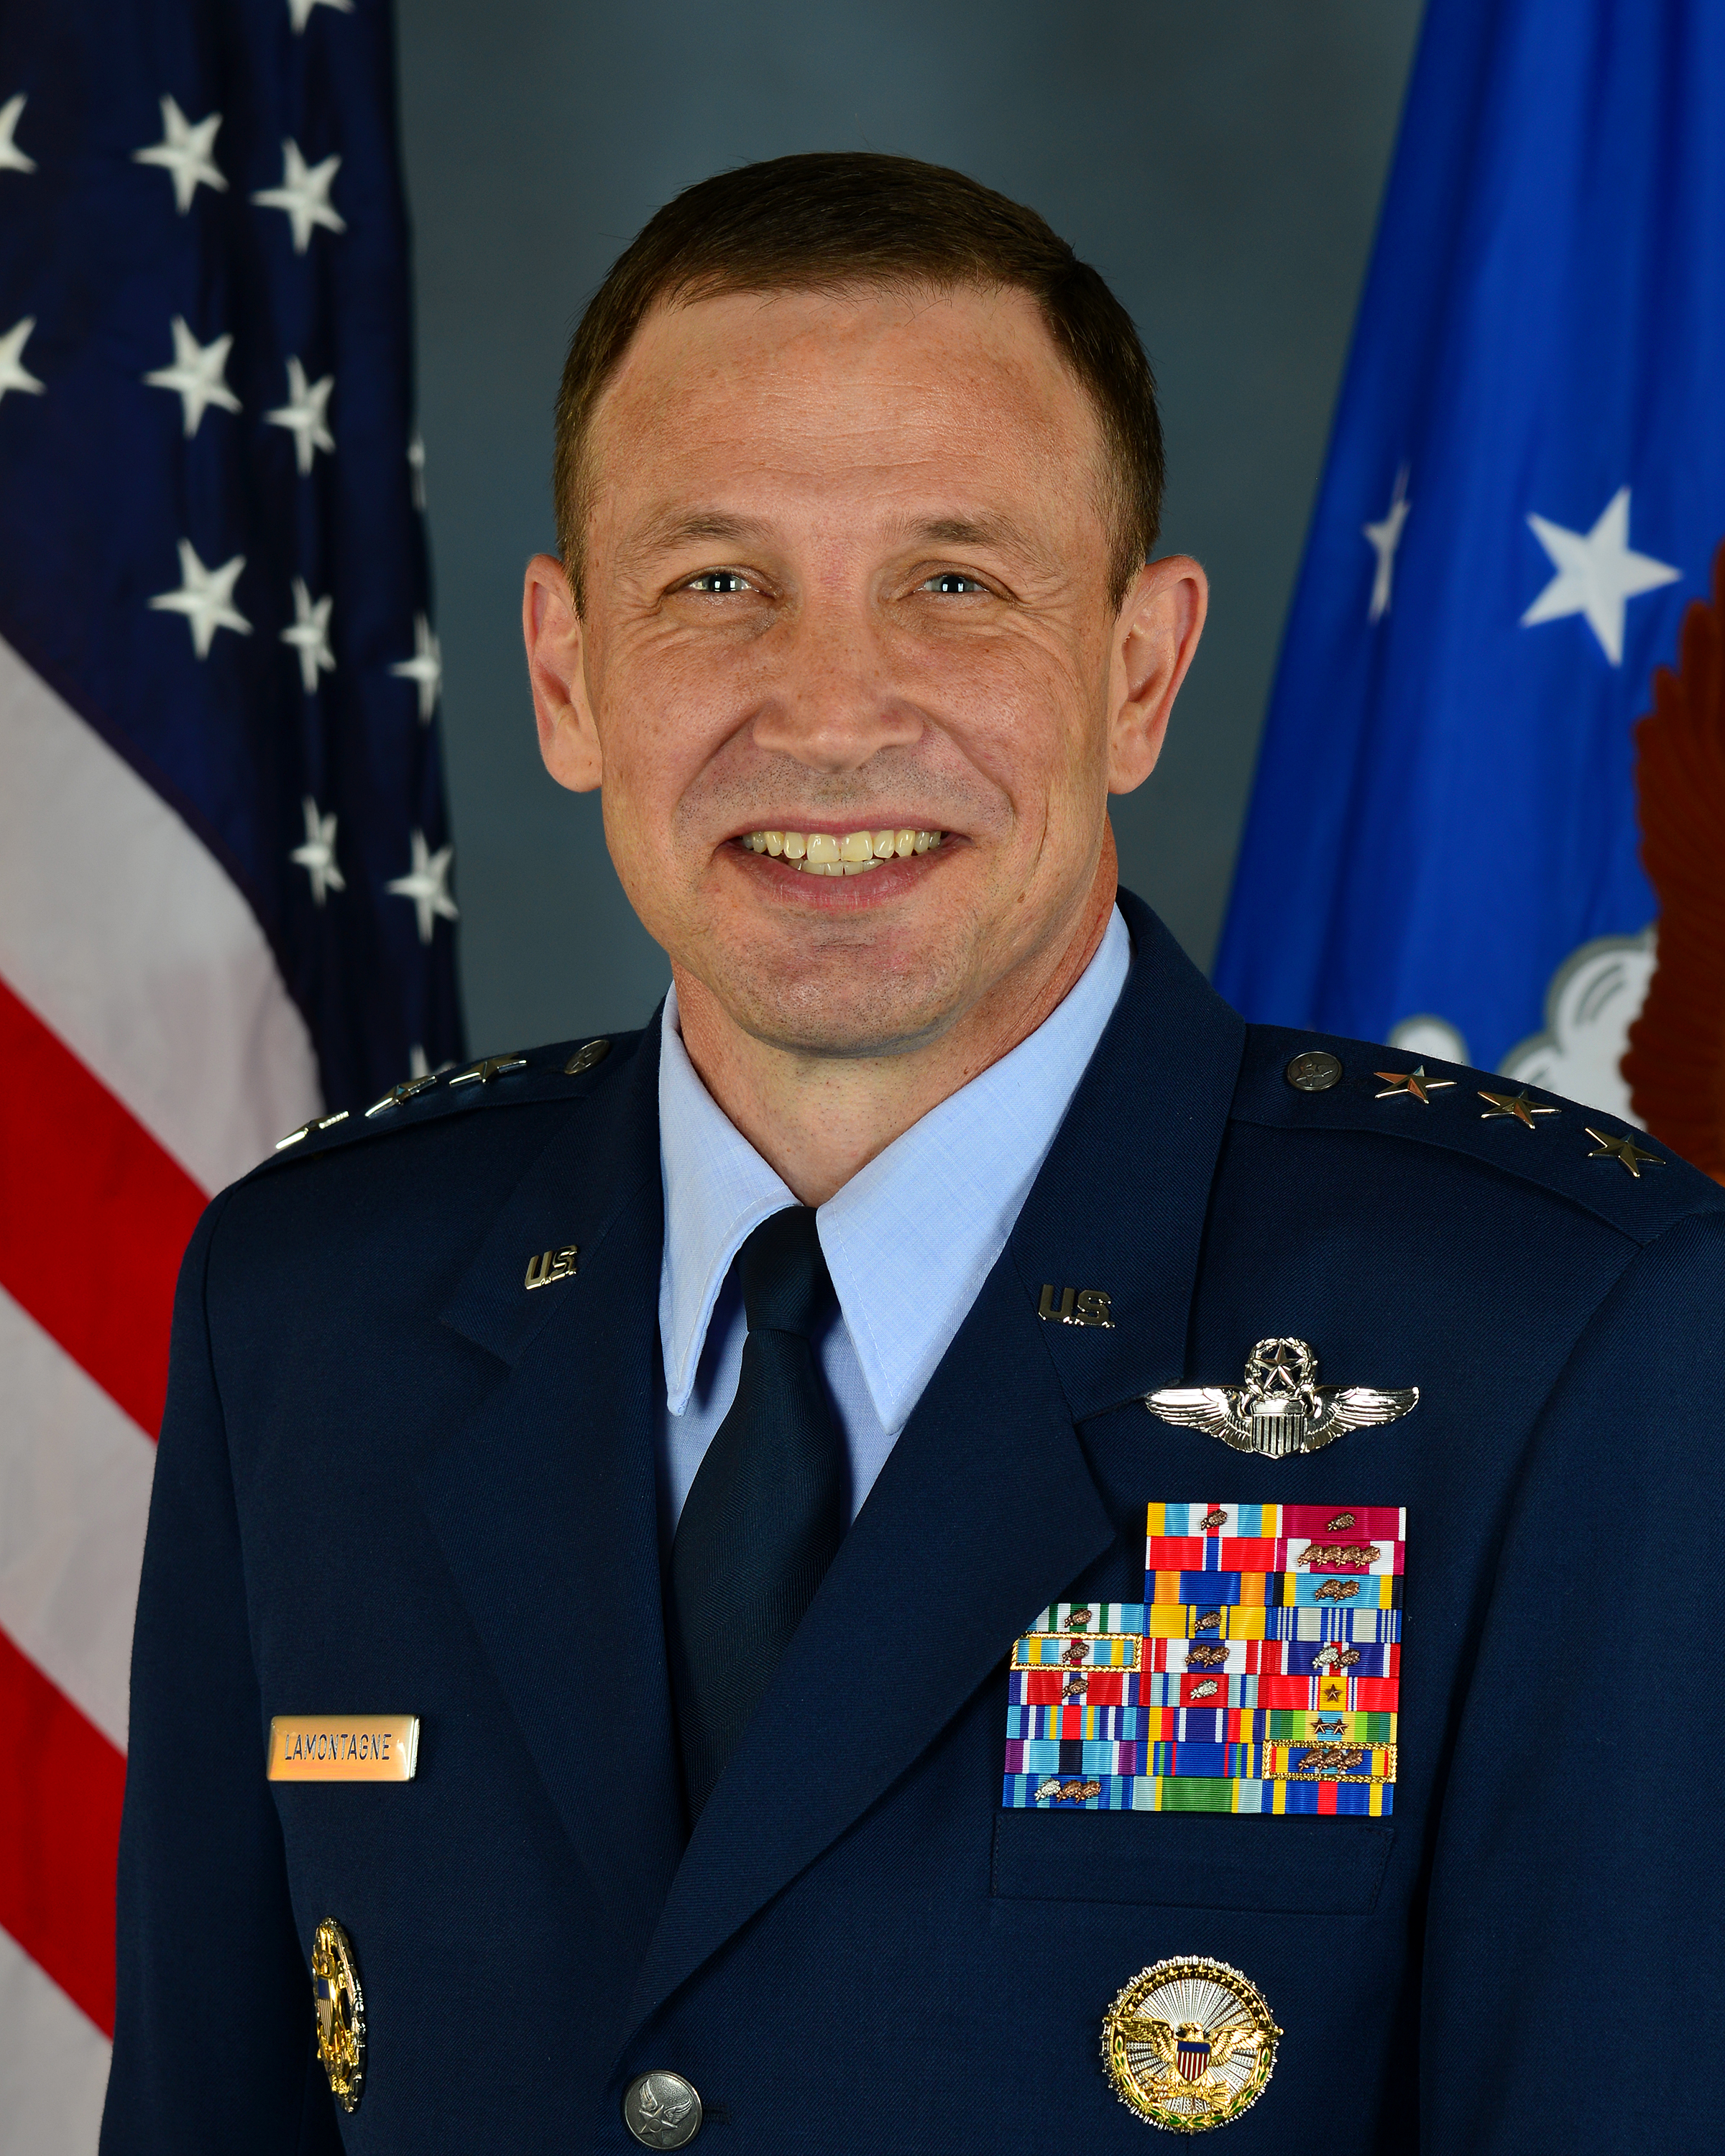 Lt. Gen. Steven Basham